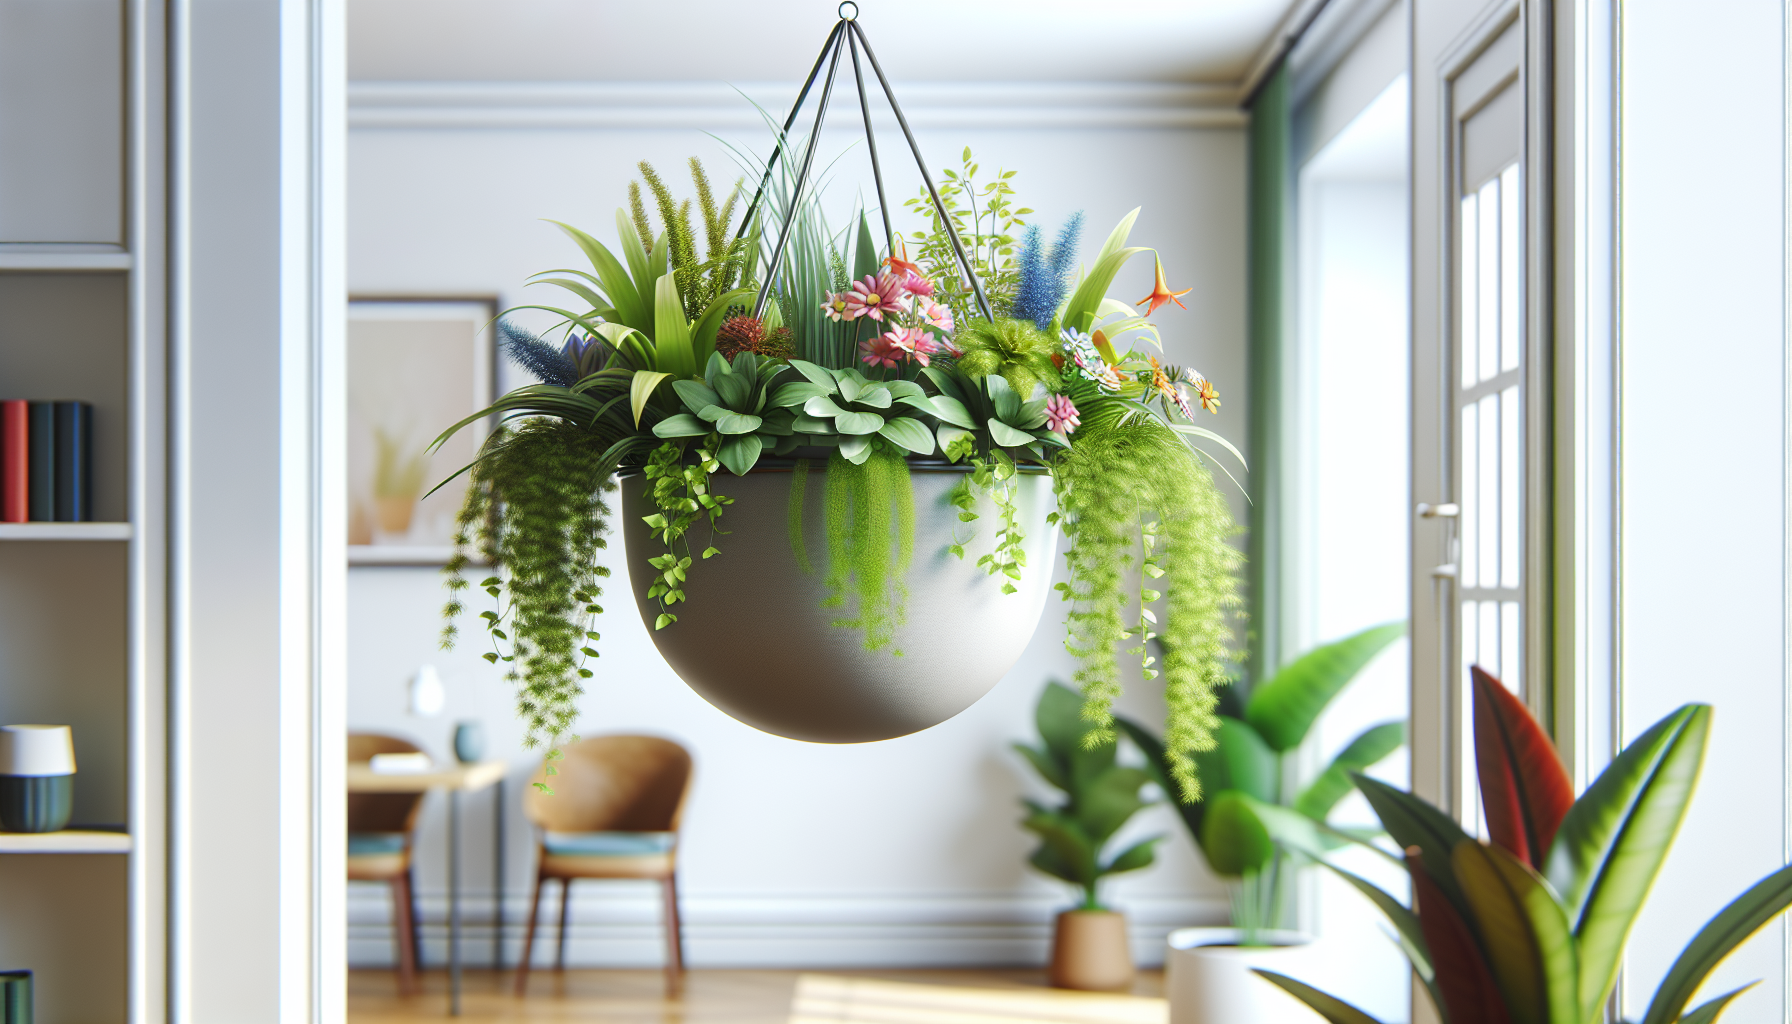 Maceta colgante con variedad de plantas verdes y flores coloridas, decorando un espacio interior luminoso.